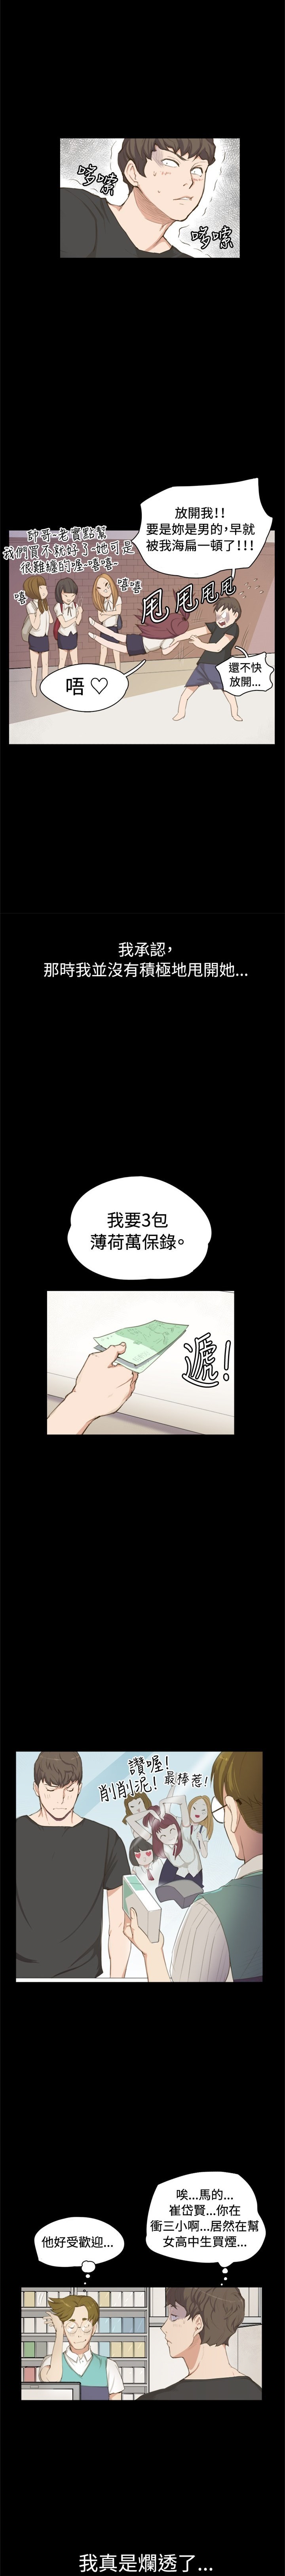 深夜便利店韩国福利漫画全集资源